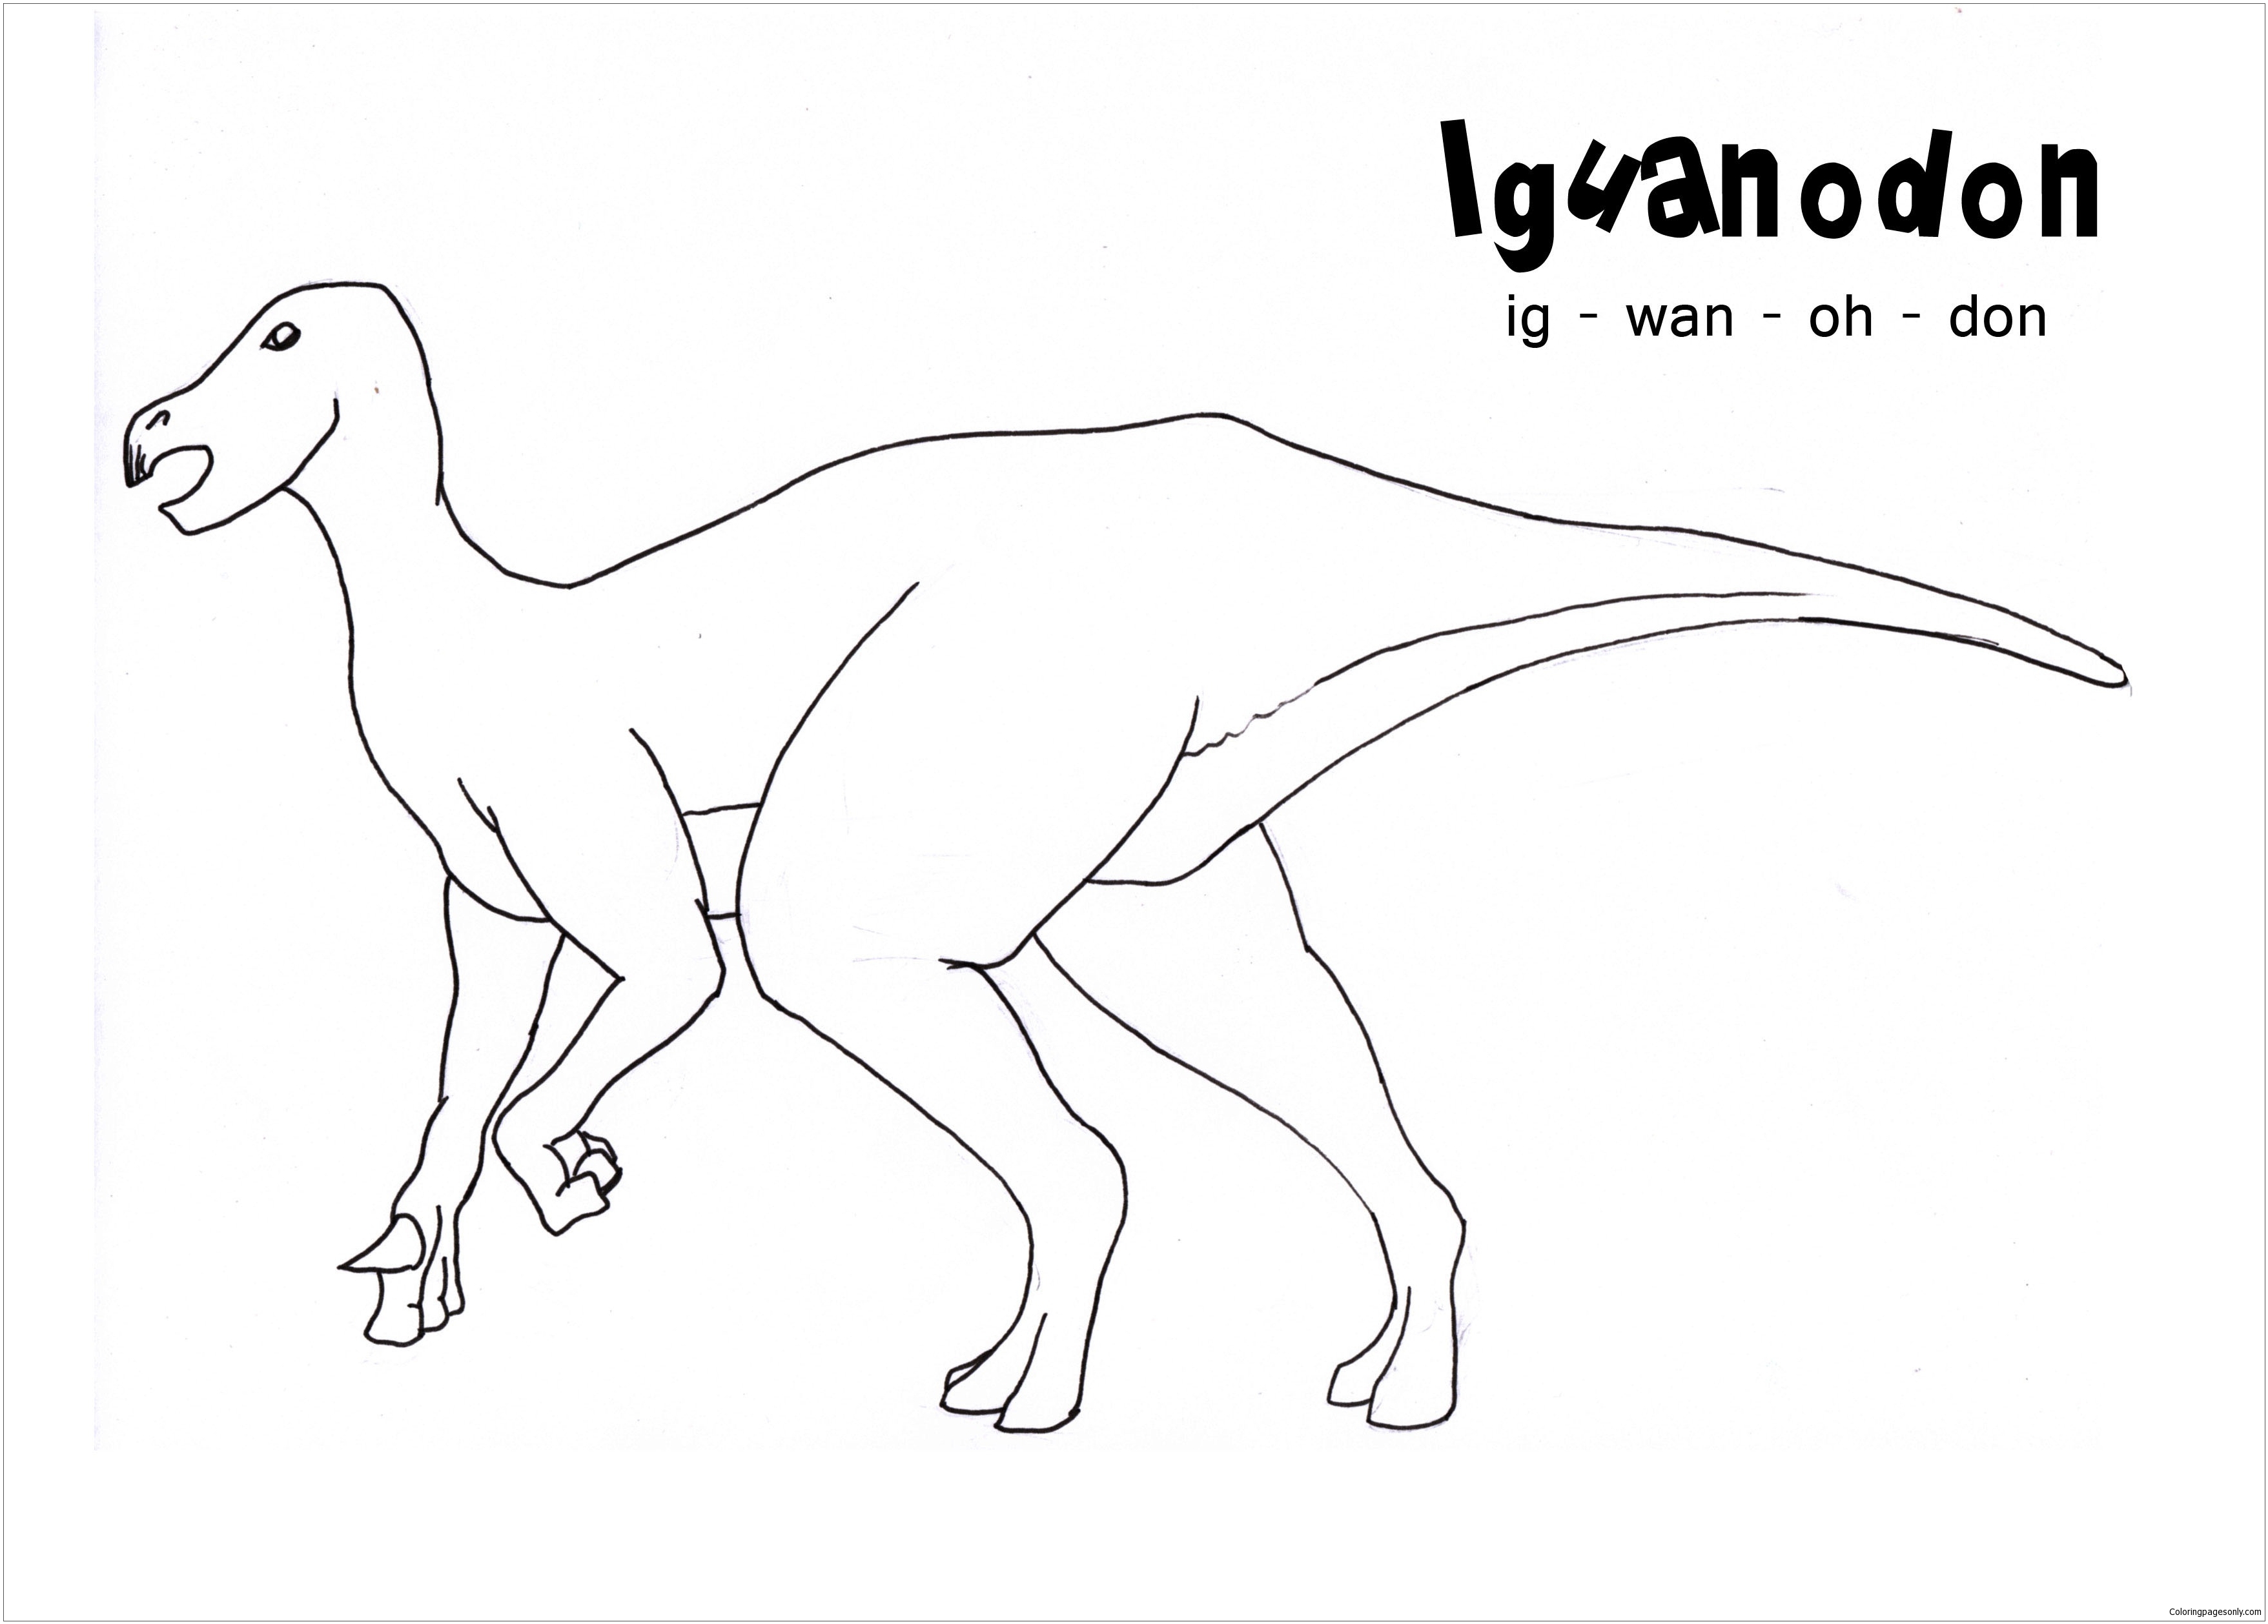 Iguanodon from Iguanodon